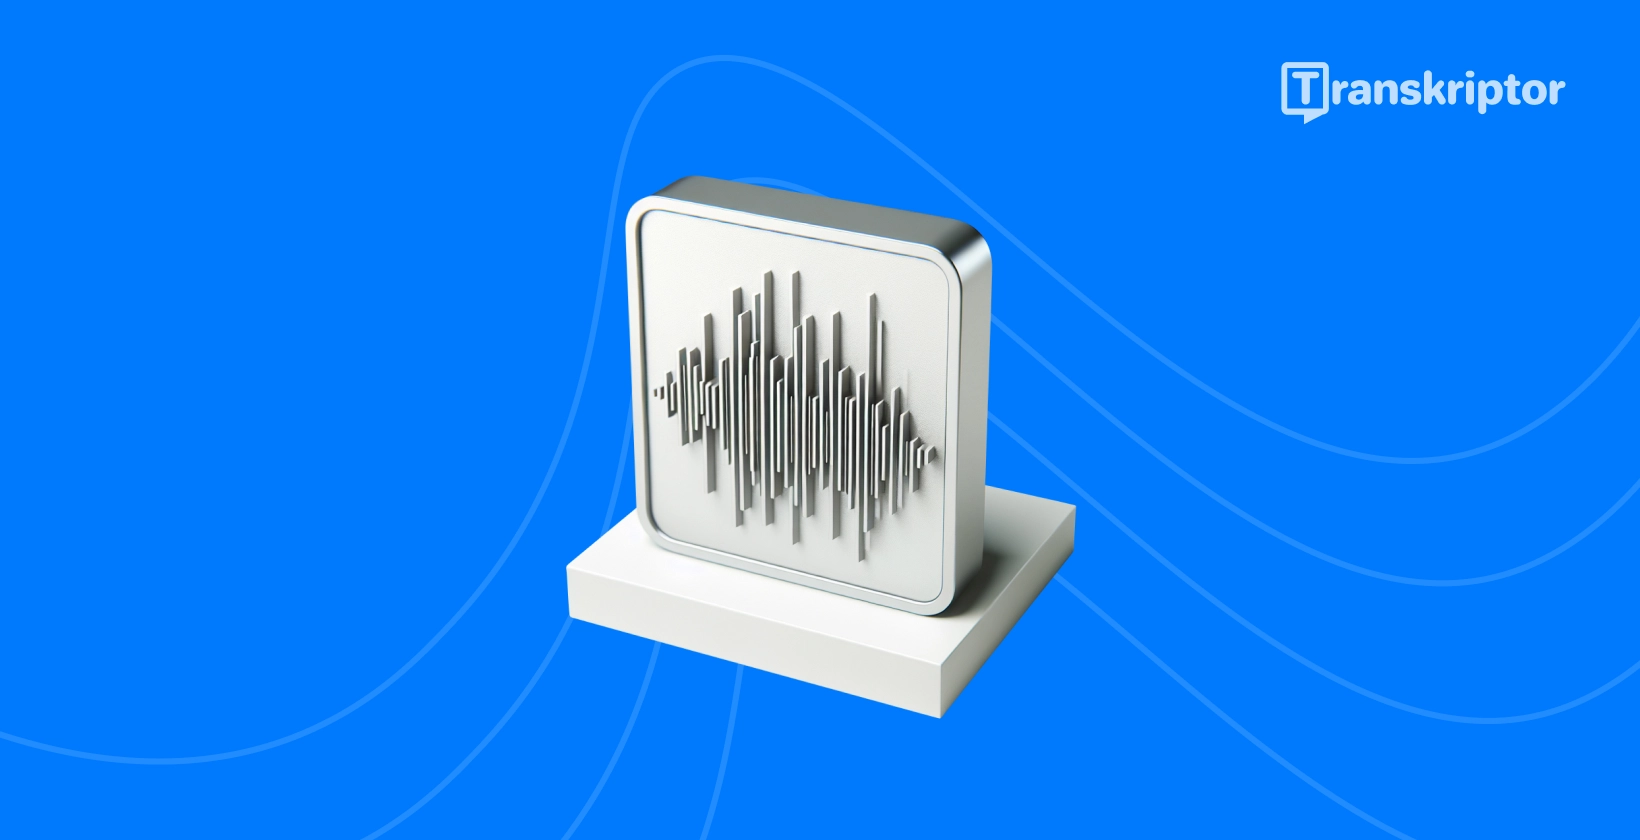 Ilustracja fal dźwiękowych na monitorze przedstawia proces transkrypcji dźwięku na żywo, jak opisano w przewodniku.